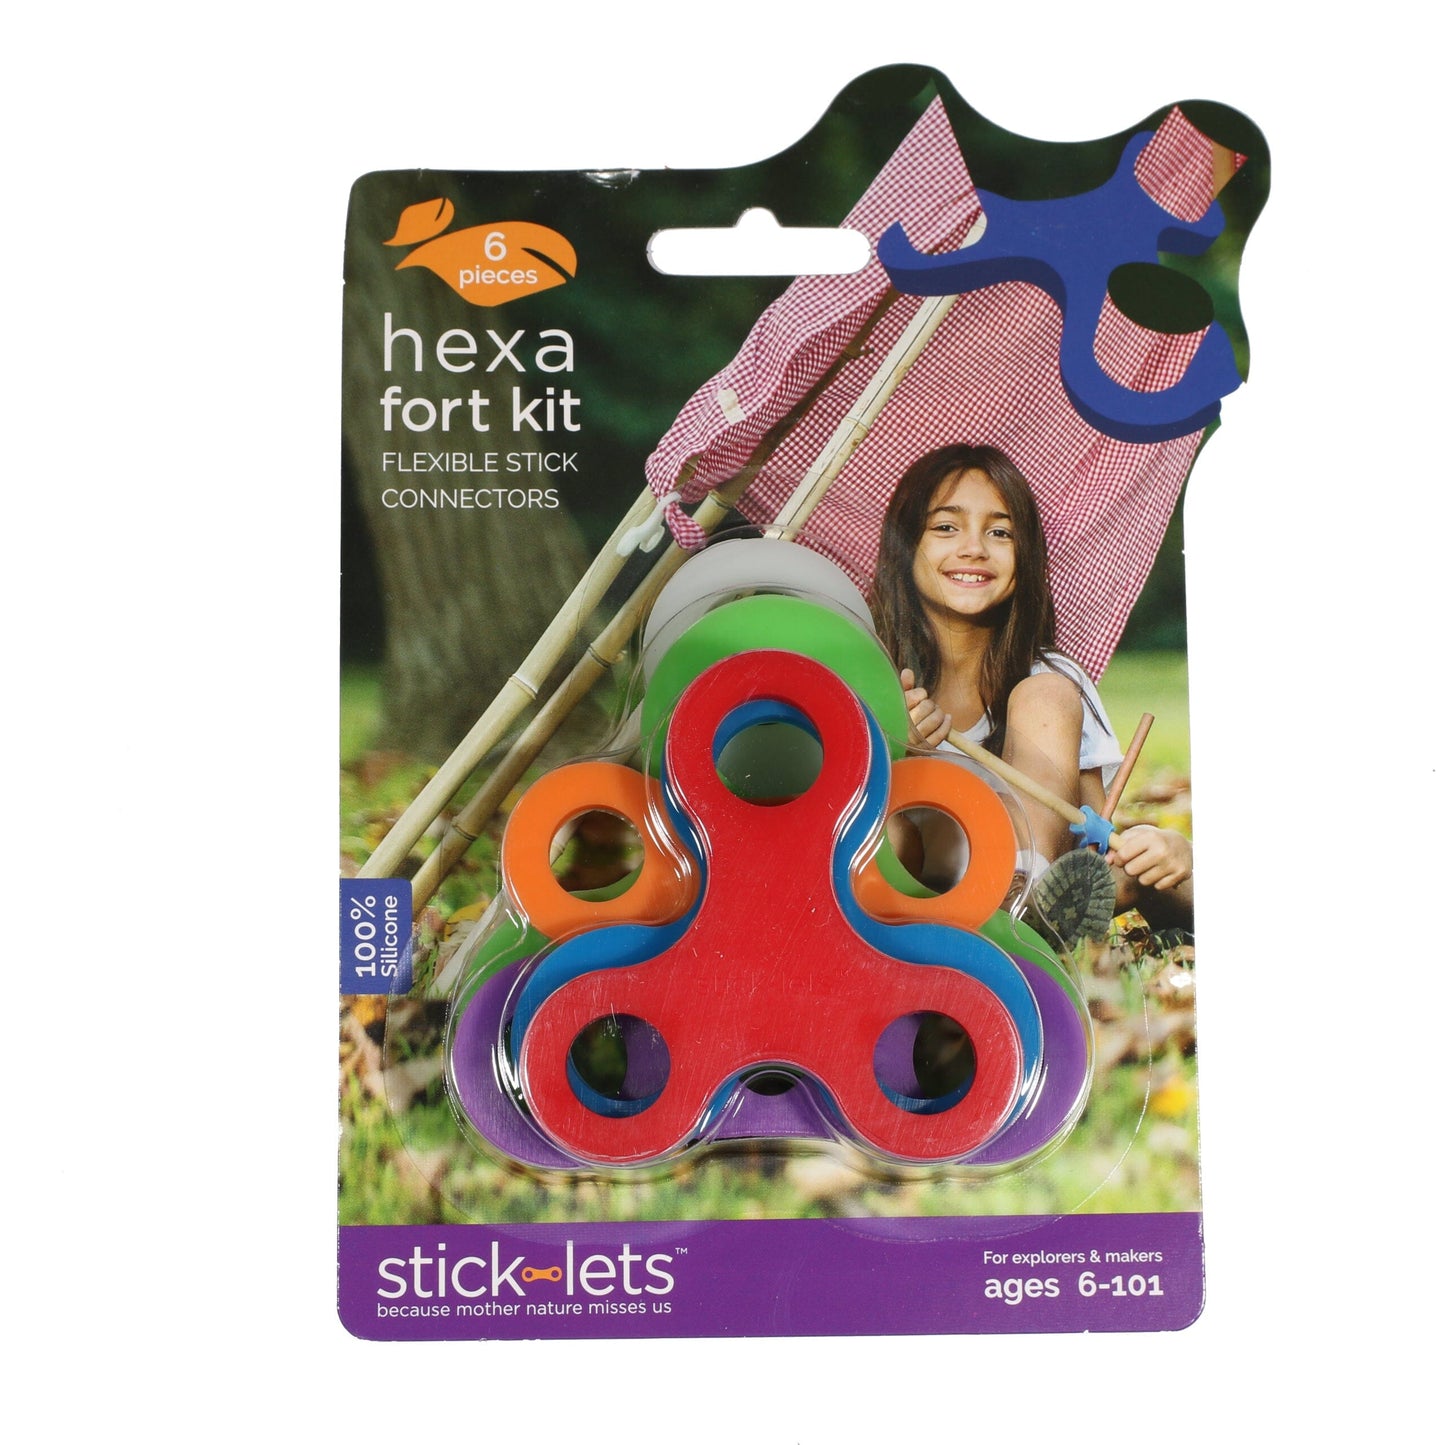 Sticklets 6pc Hexa Fort Kit